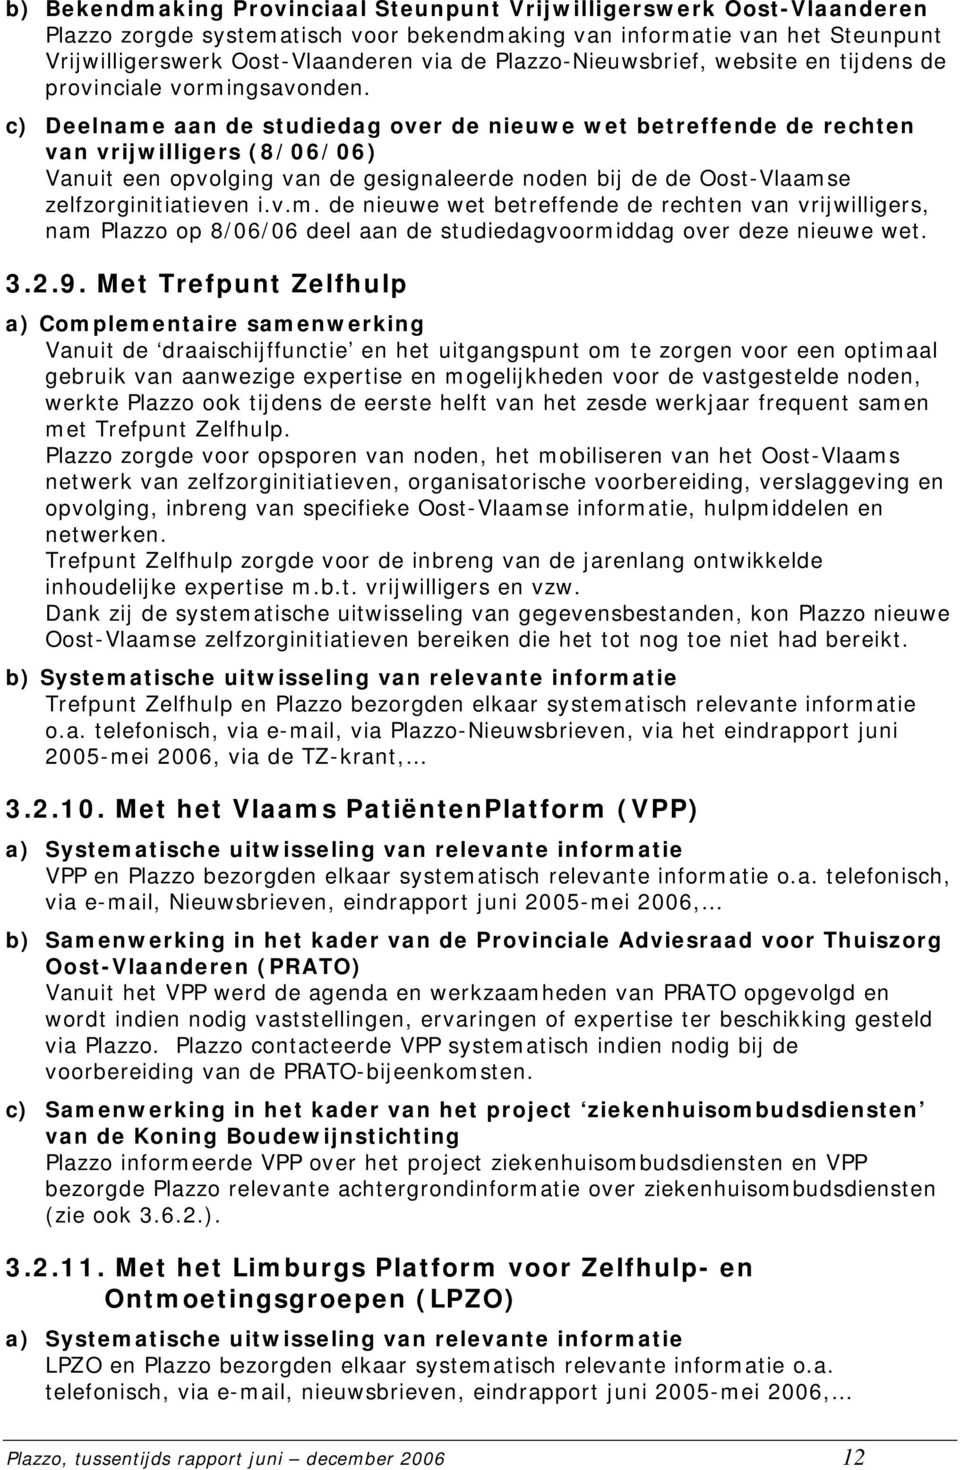 c) Deelname aan de studiedag over de nieuwe wet betreffende de rechten van vrijwilligers (8/06/06) Vanuit een opvolging van de gesignaleerde noden bij de de Oost-Vlaamse zelfzorginitiatieven i.v.m. de nieuwe wet betreffende de rechten van vrijwilligers, nam Plazzo op 8/06/06 deel aan de studiedagvoormiddag over deze nieuwe wet.